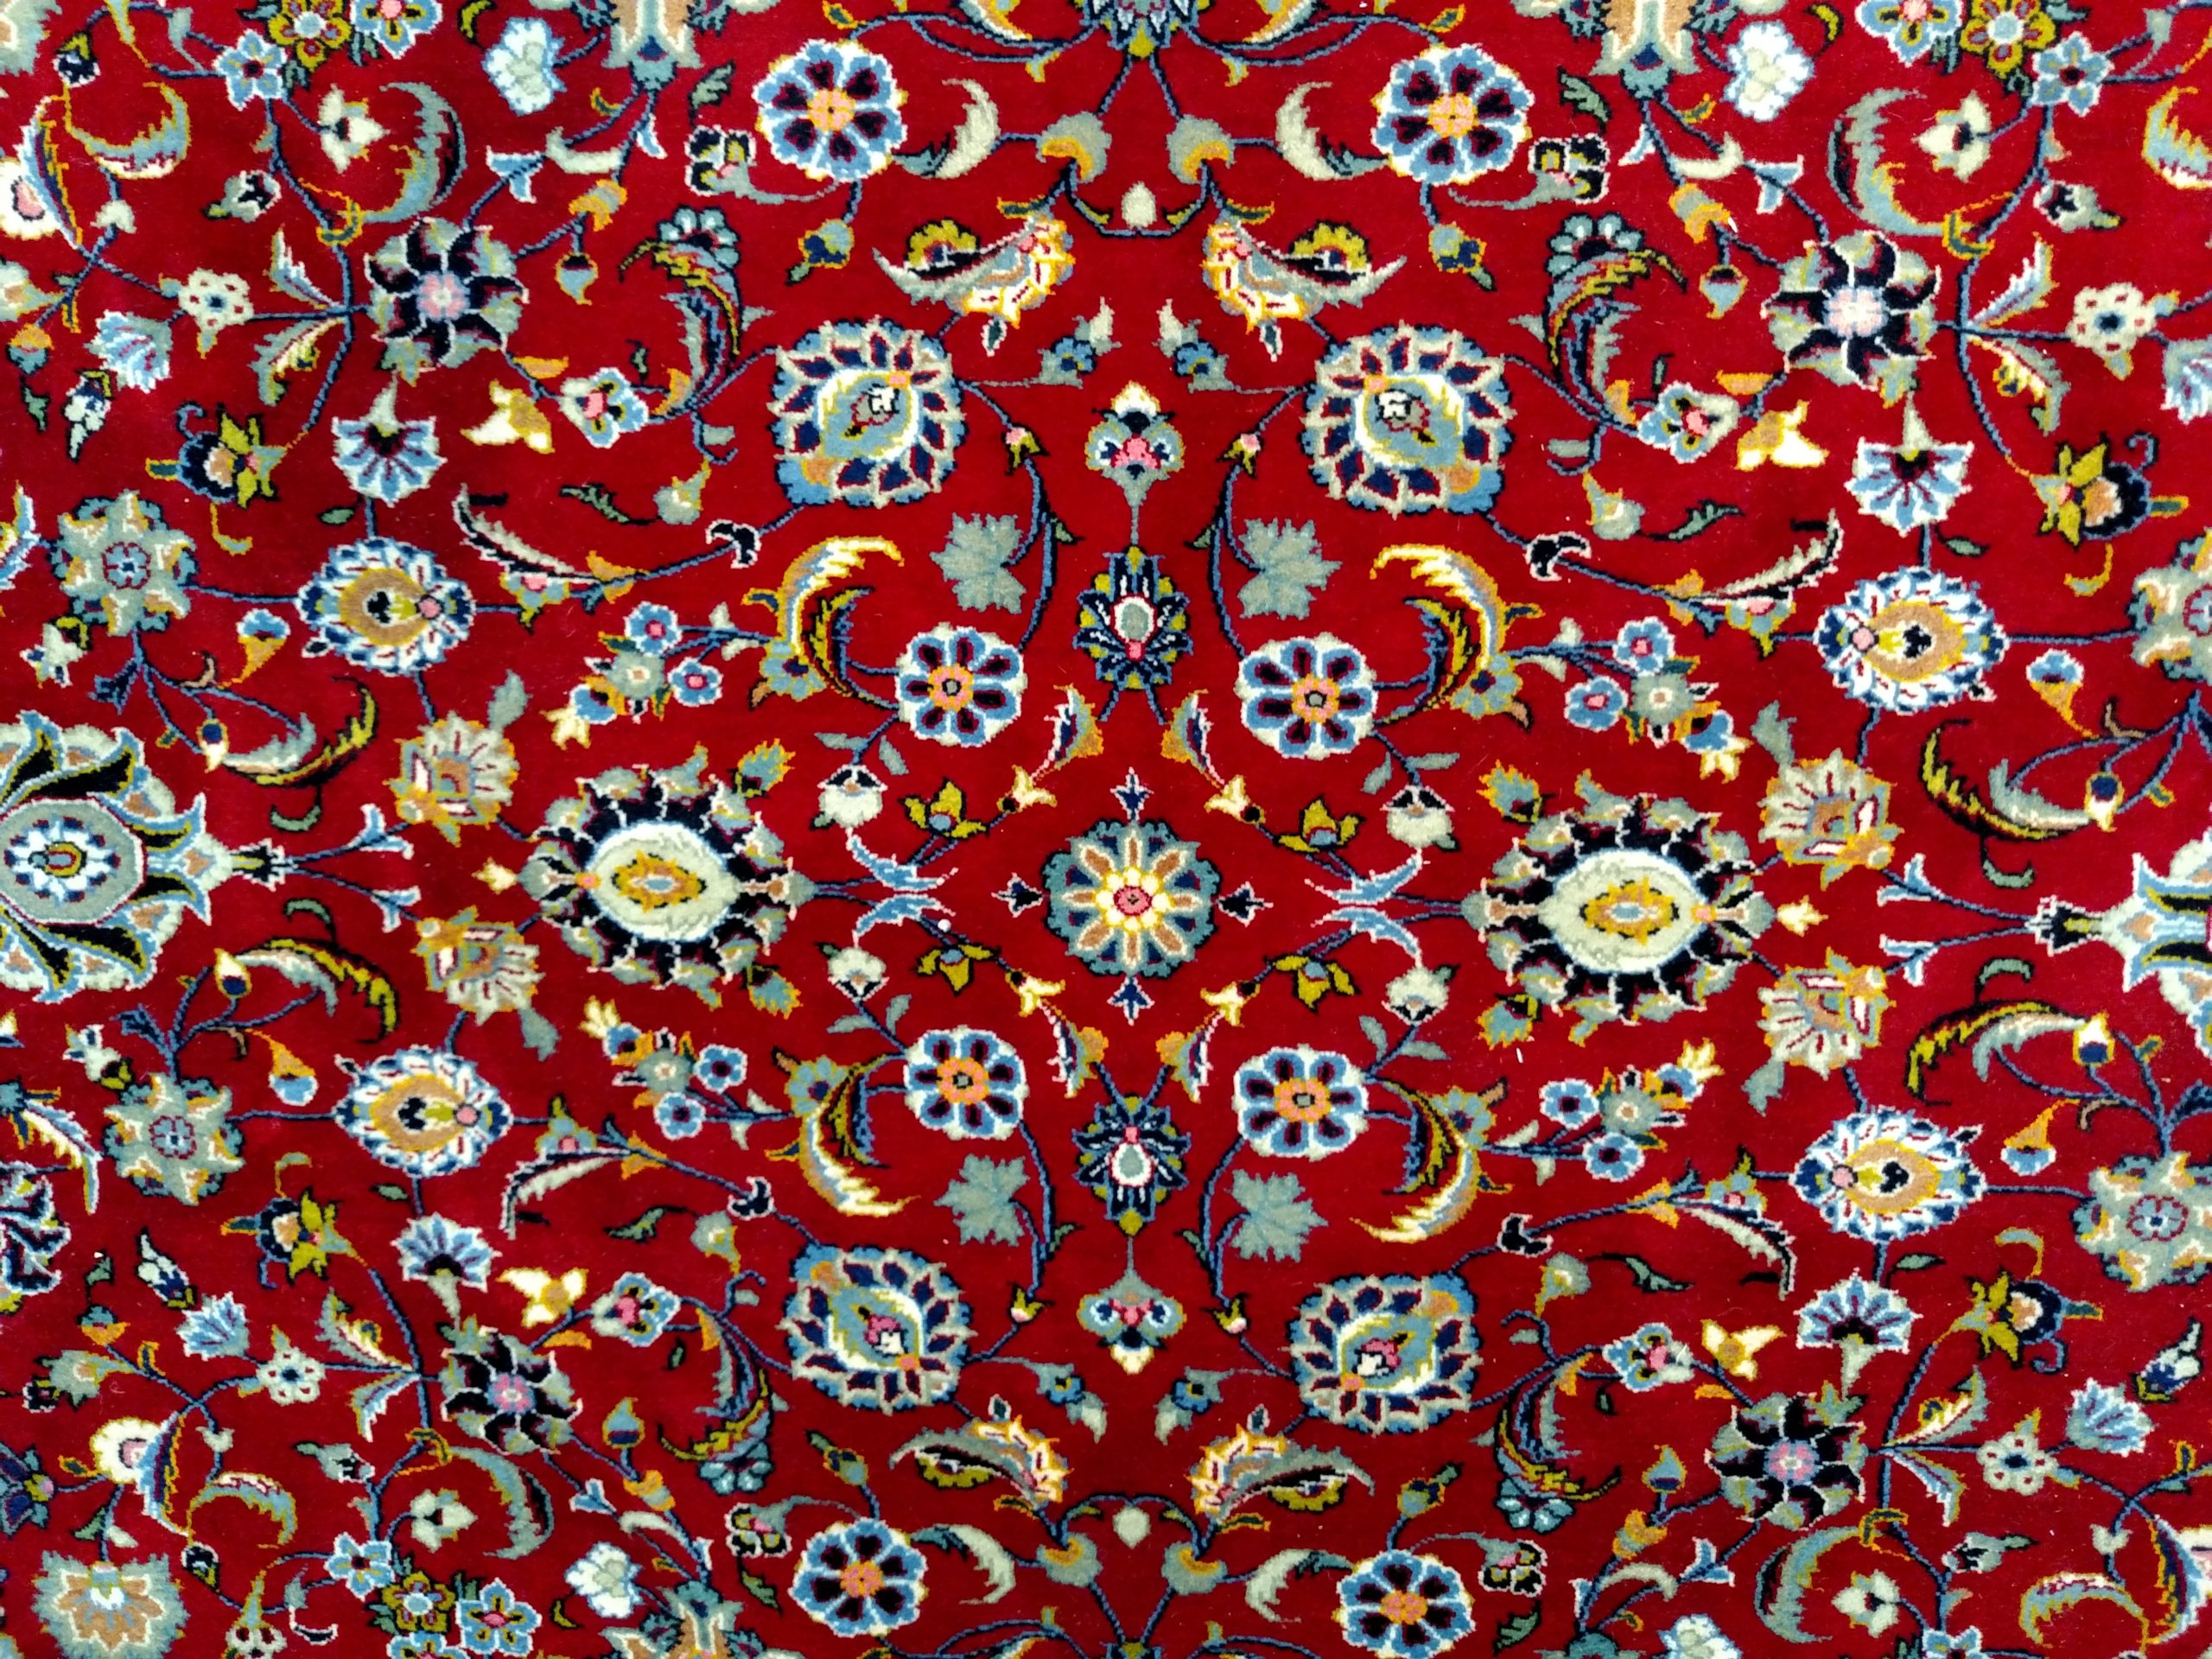 Large Red Kashan Persian Rug